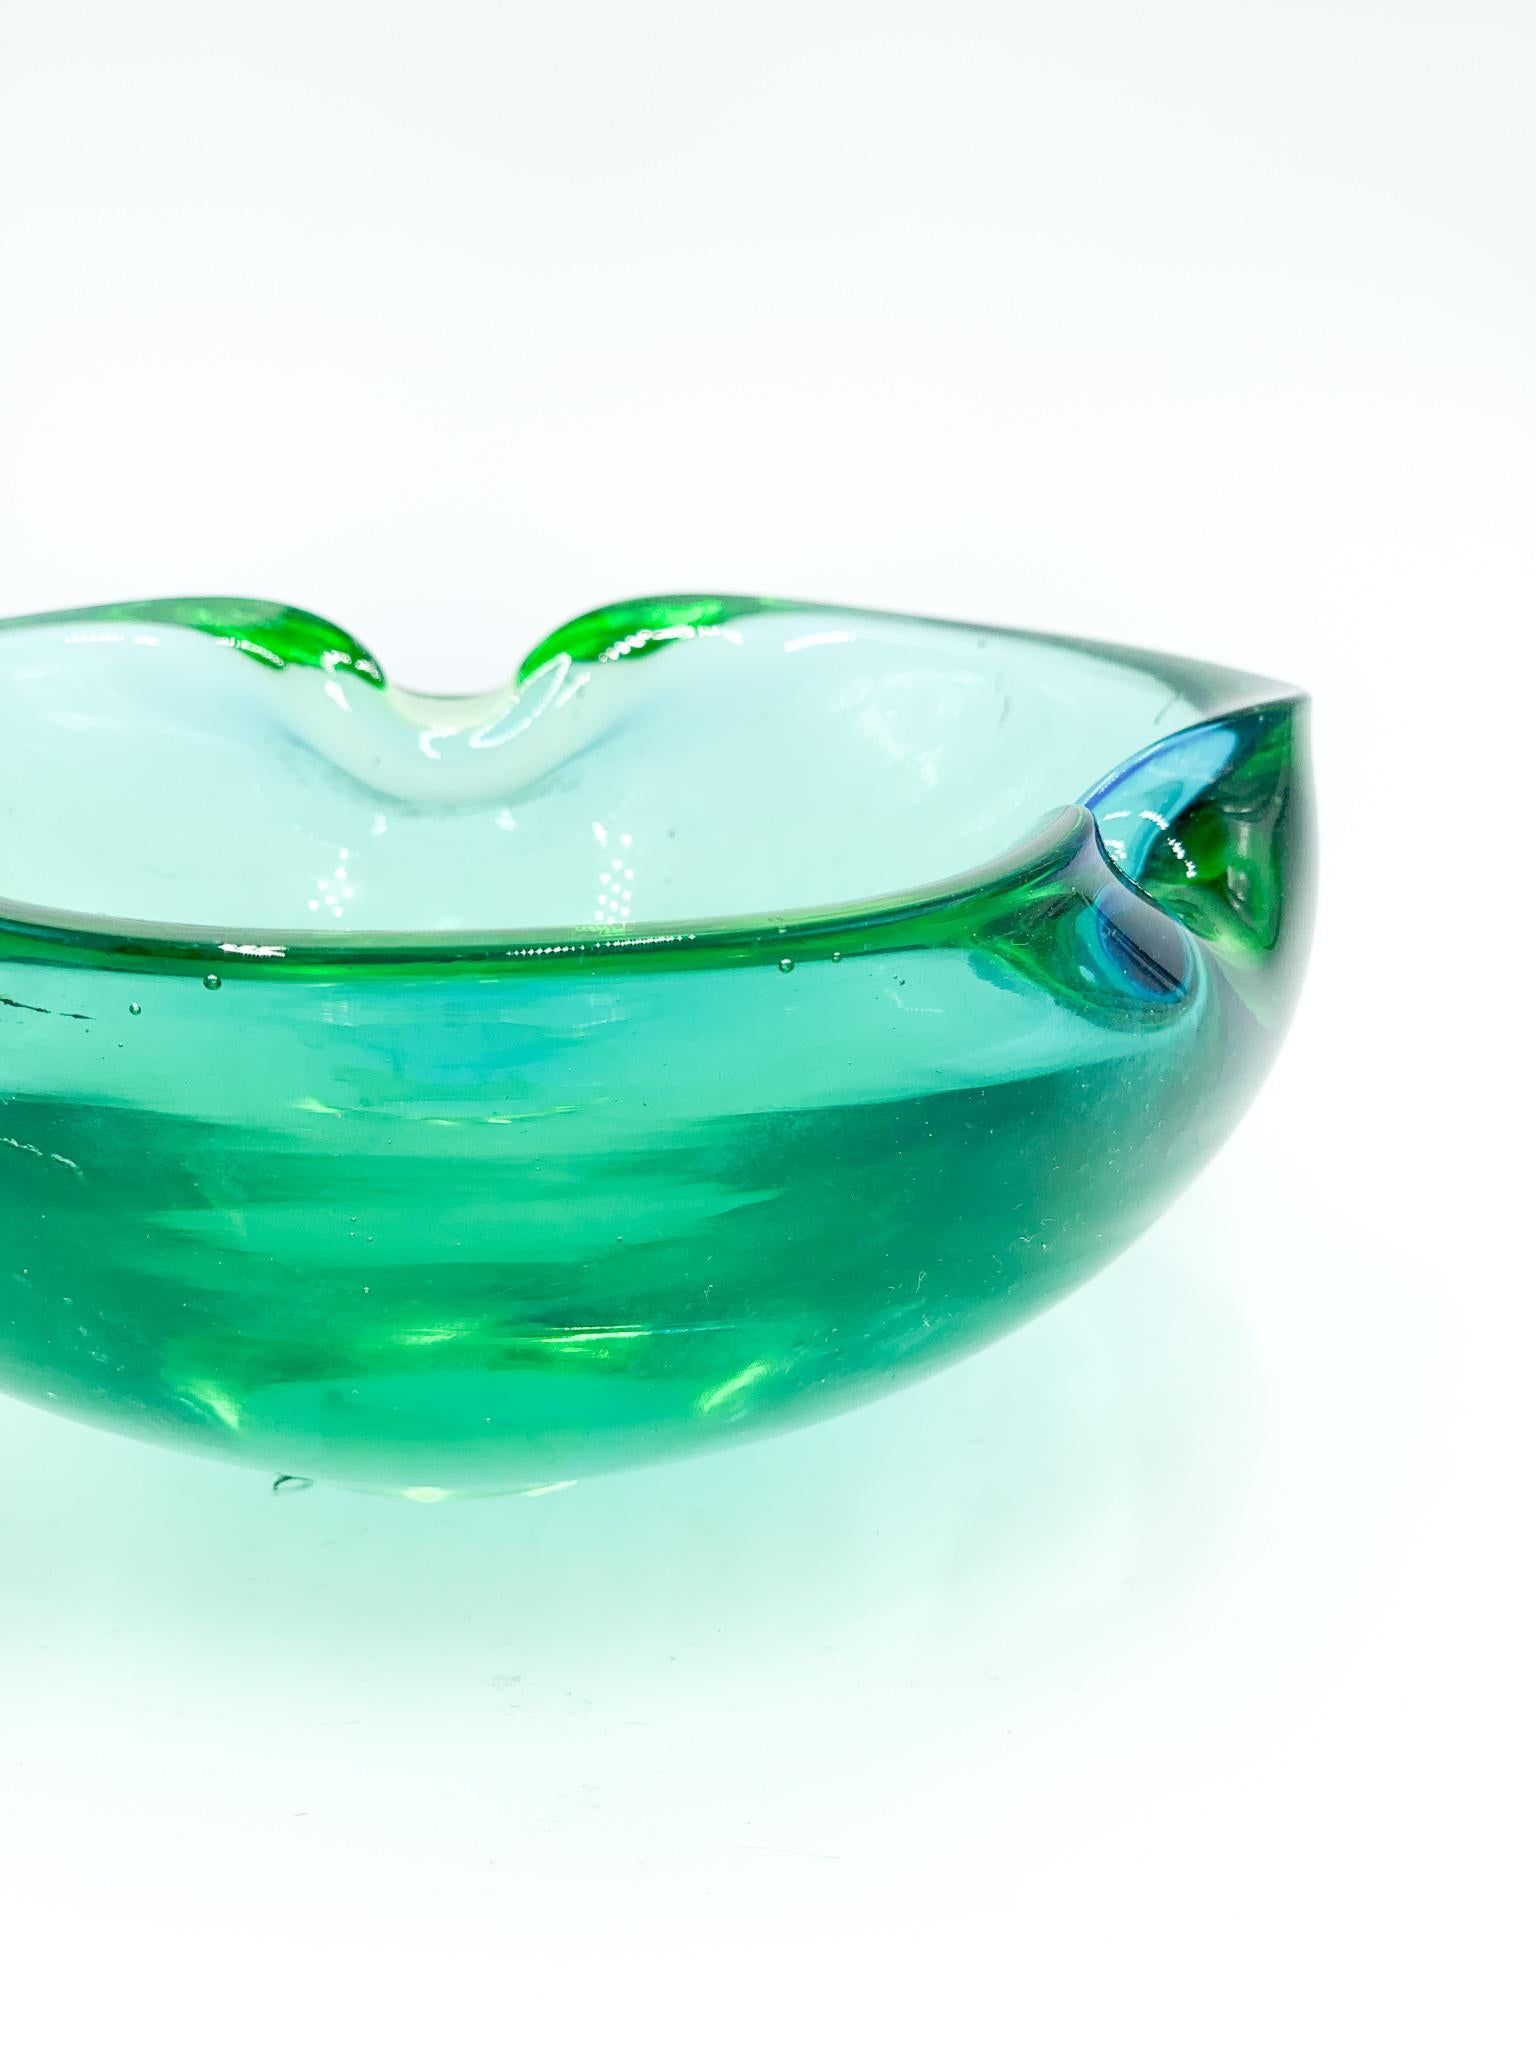 Cendrier en verre Murano vert et bleu, dont la réalisation est attribuée à Flavio Poli et réalisé dans les années 1960

Le cendrier a été réalisé avec une technique particulière d'infusion de couleur : vert avec des nuances bleues selon les